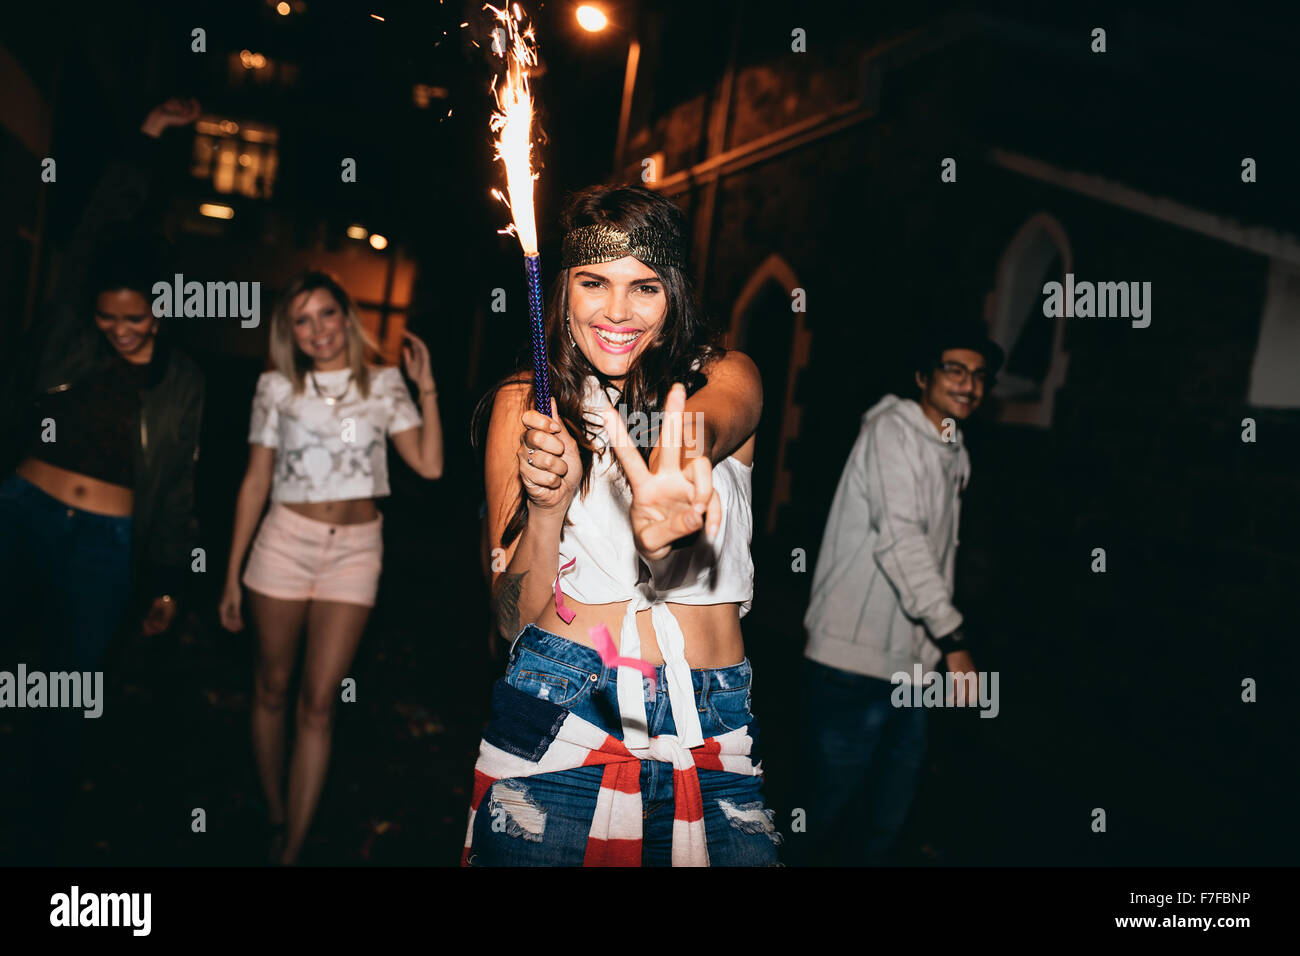 Porträt der fröhliche junge Frau hält eine Wunderkerze und zeigt Victory-Zeichen. Jugendliche feiern 4. Juli bei Nacht outd Stockfoto